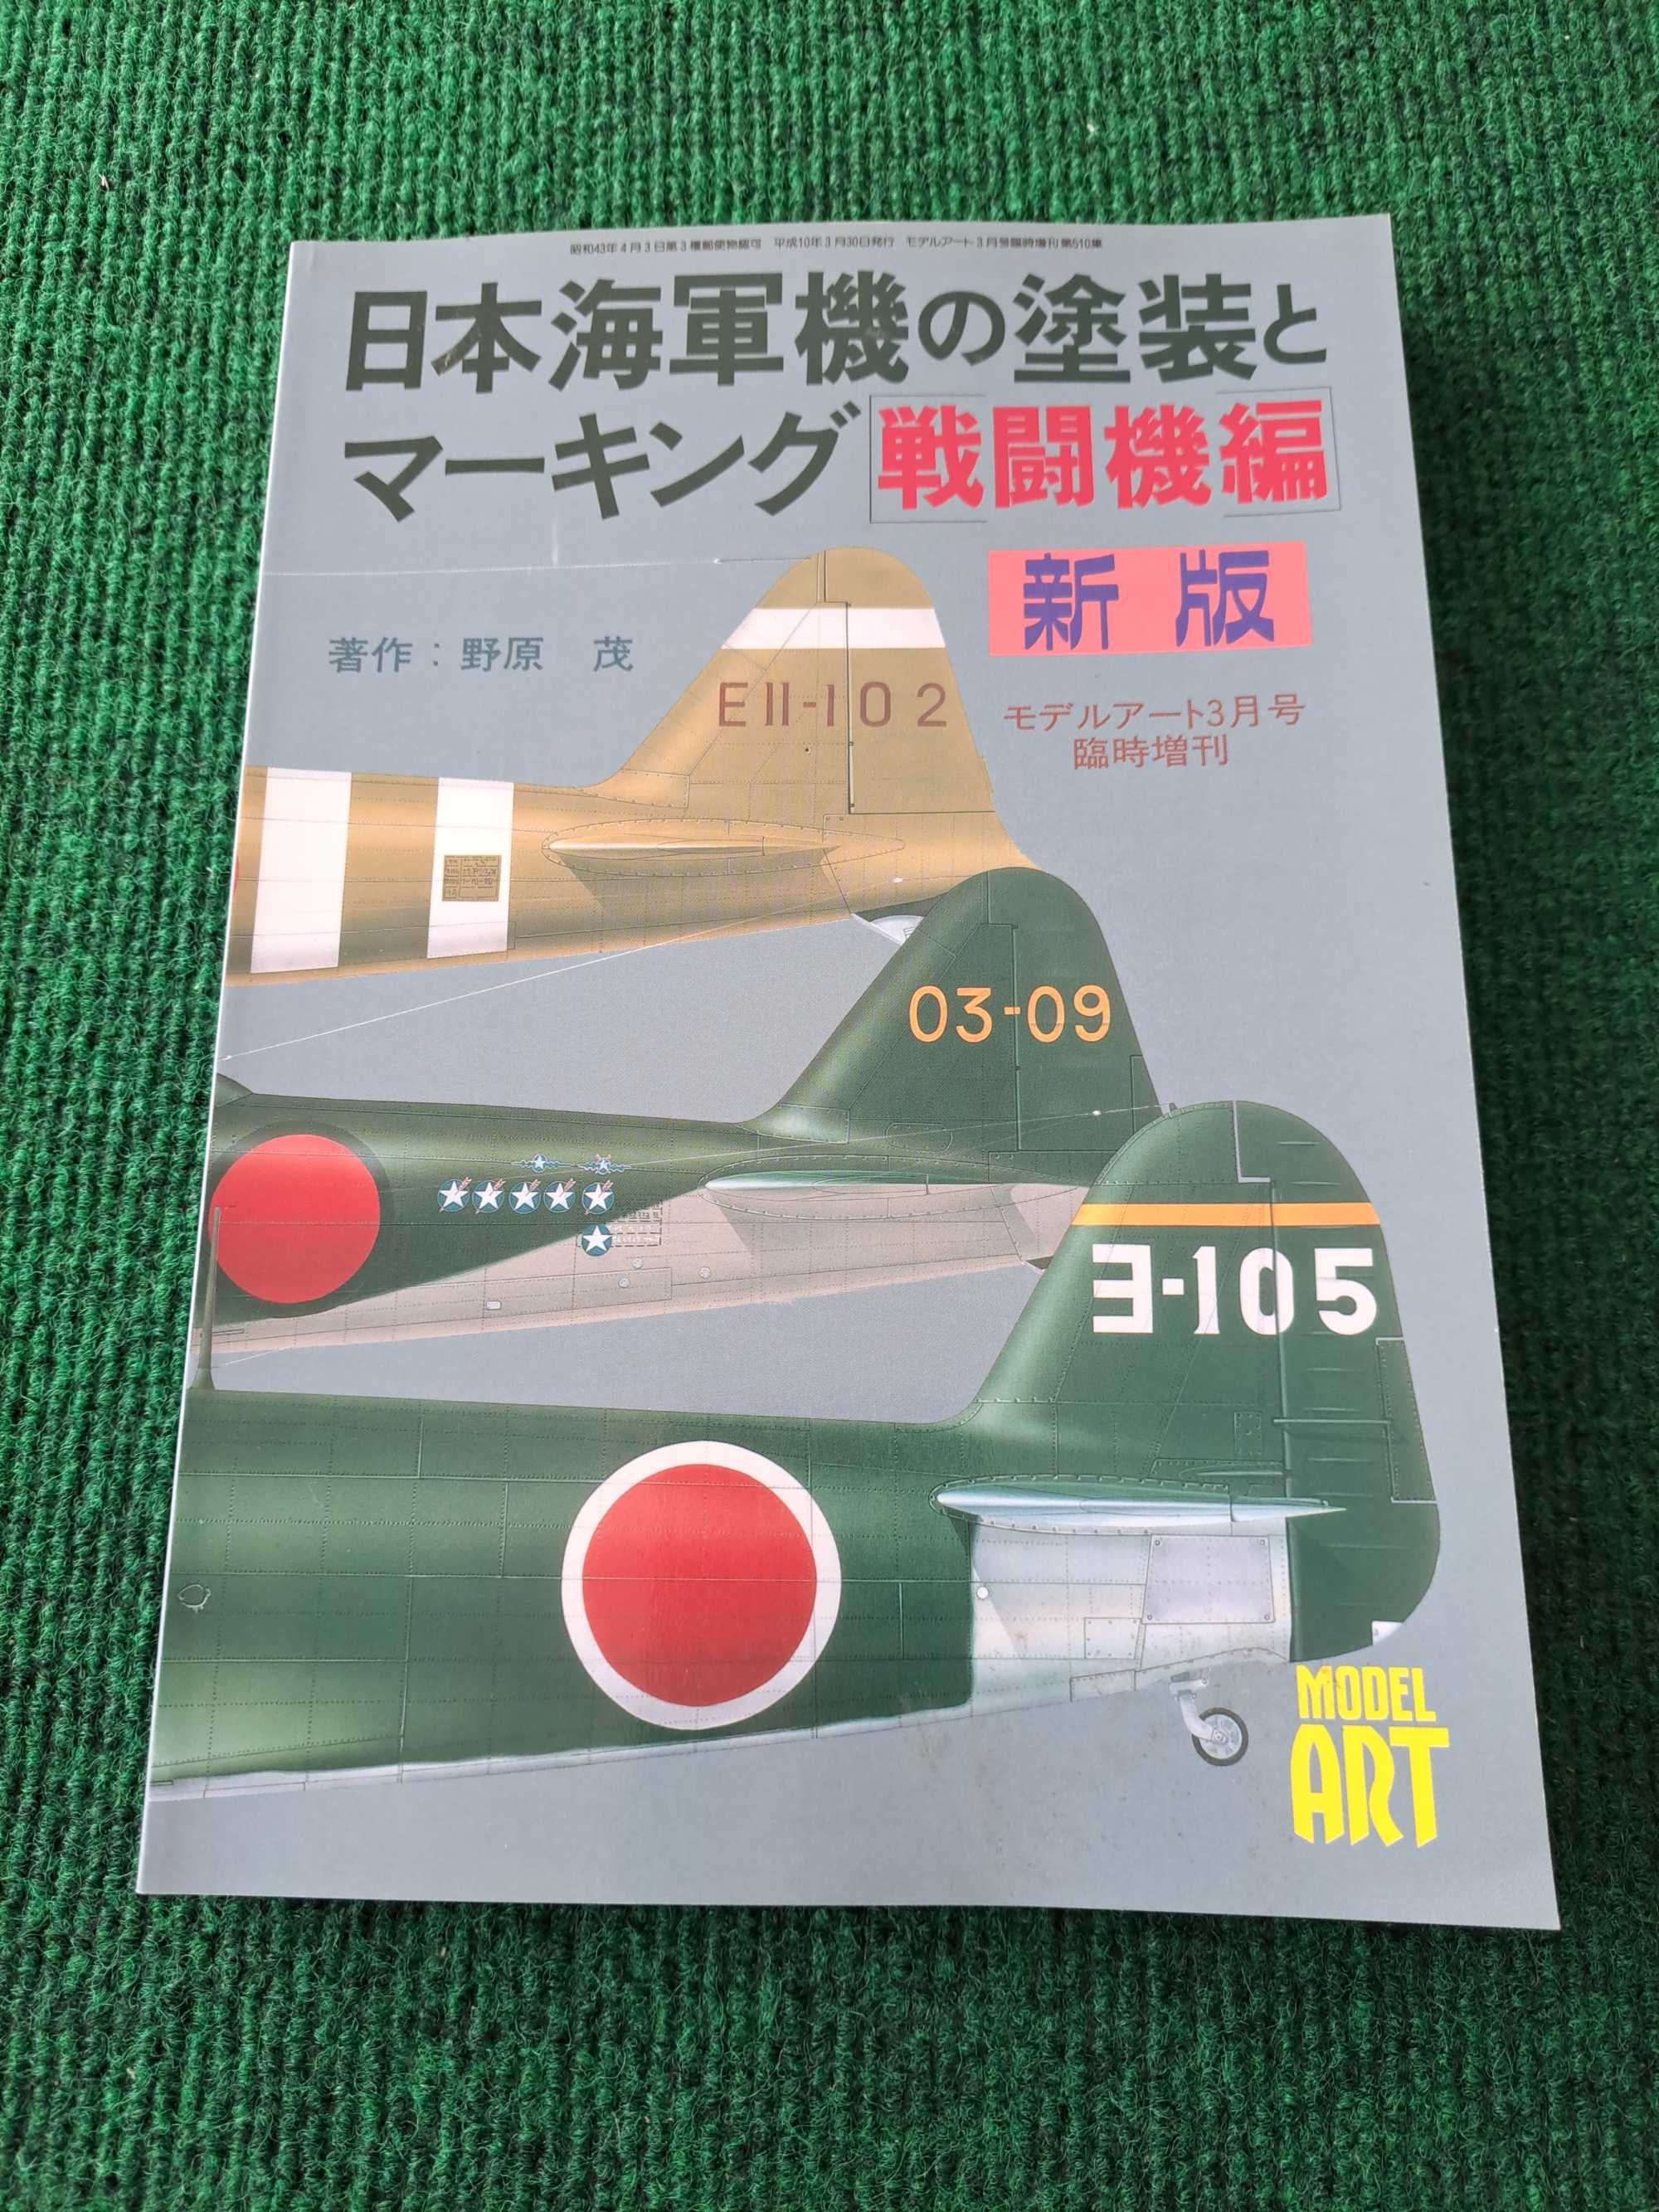 Model Art N.° 510 - Aviões - Caças da Marinha Imperial Japonesa